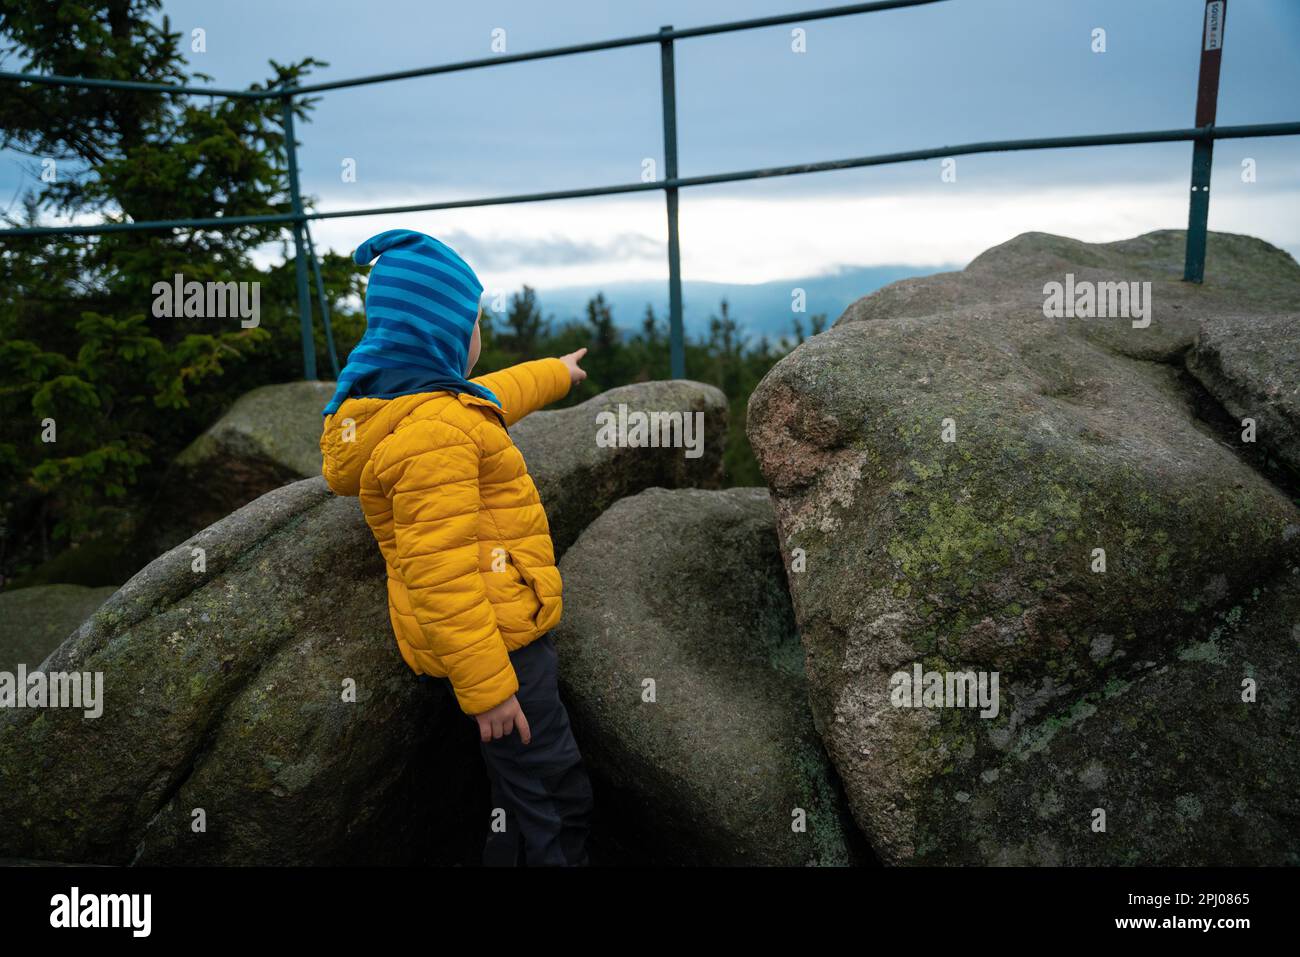 L'enfant se tient entre les blocs et pointe vers quelque chose au loin. Montagnes polonaises Banque D'Images